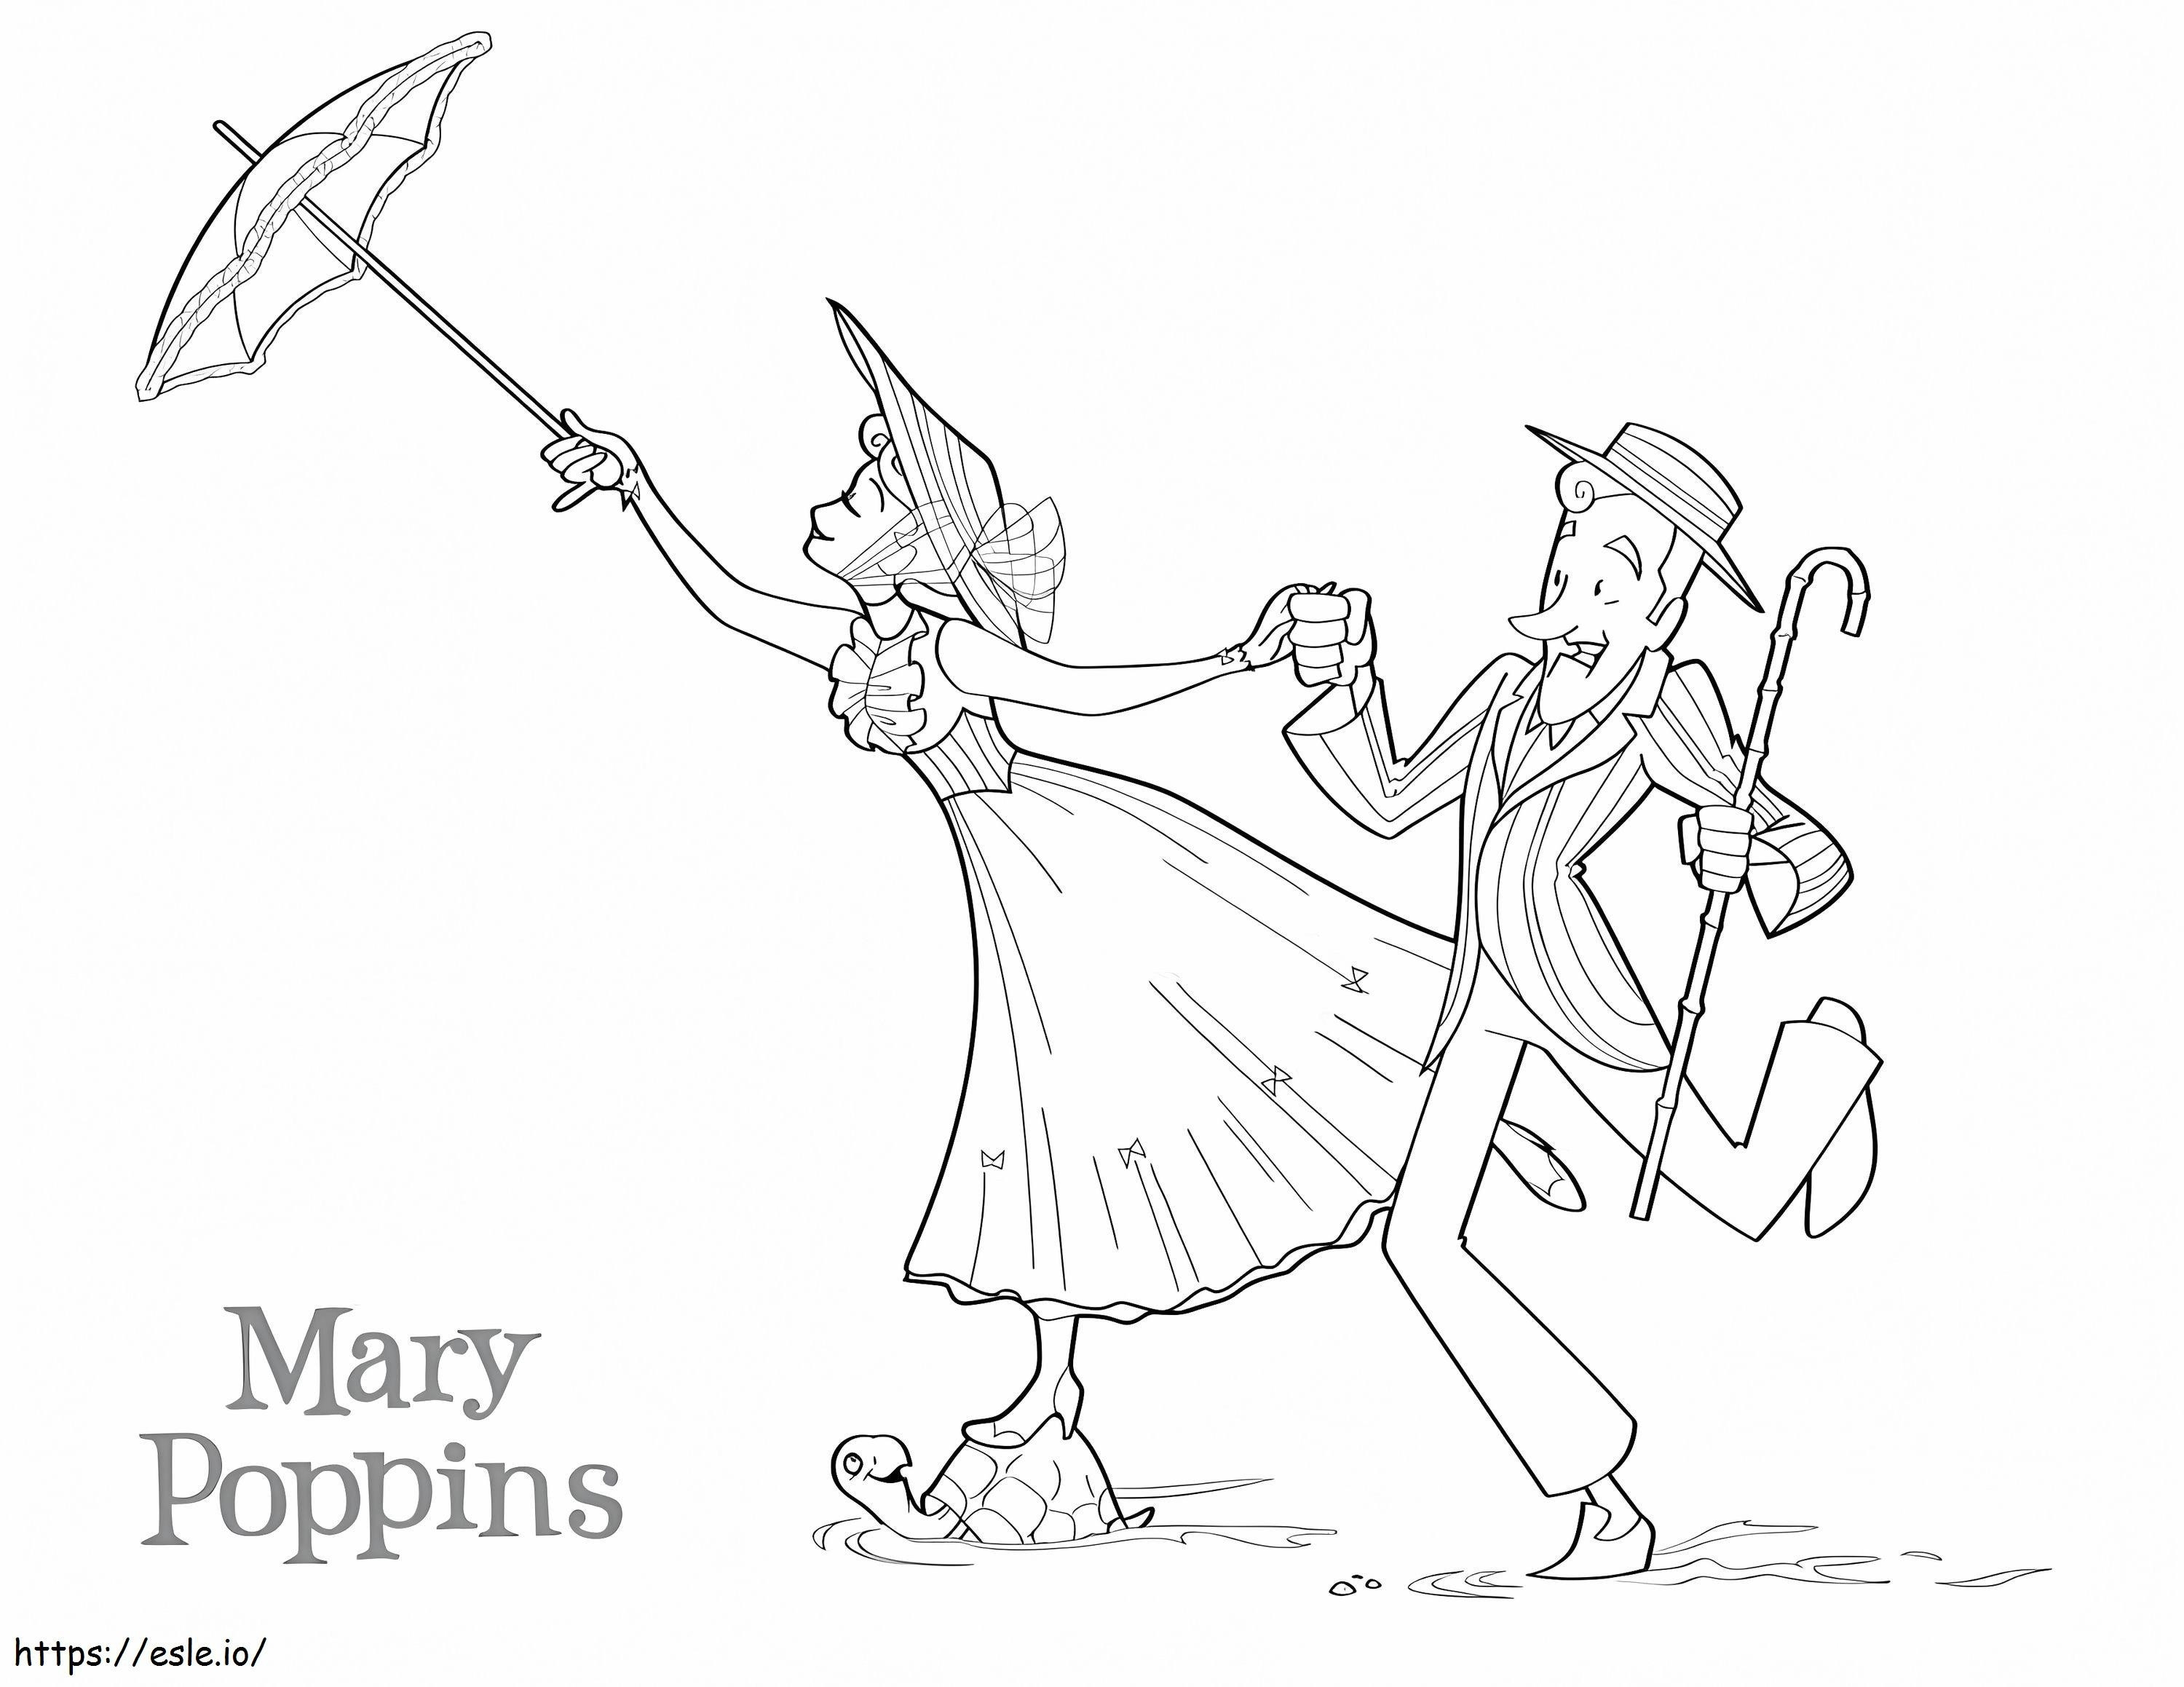 Animazione di Mary Poppins da colorare